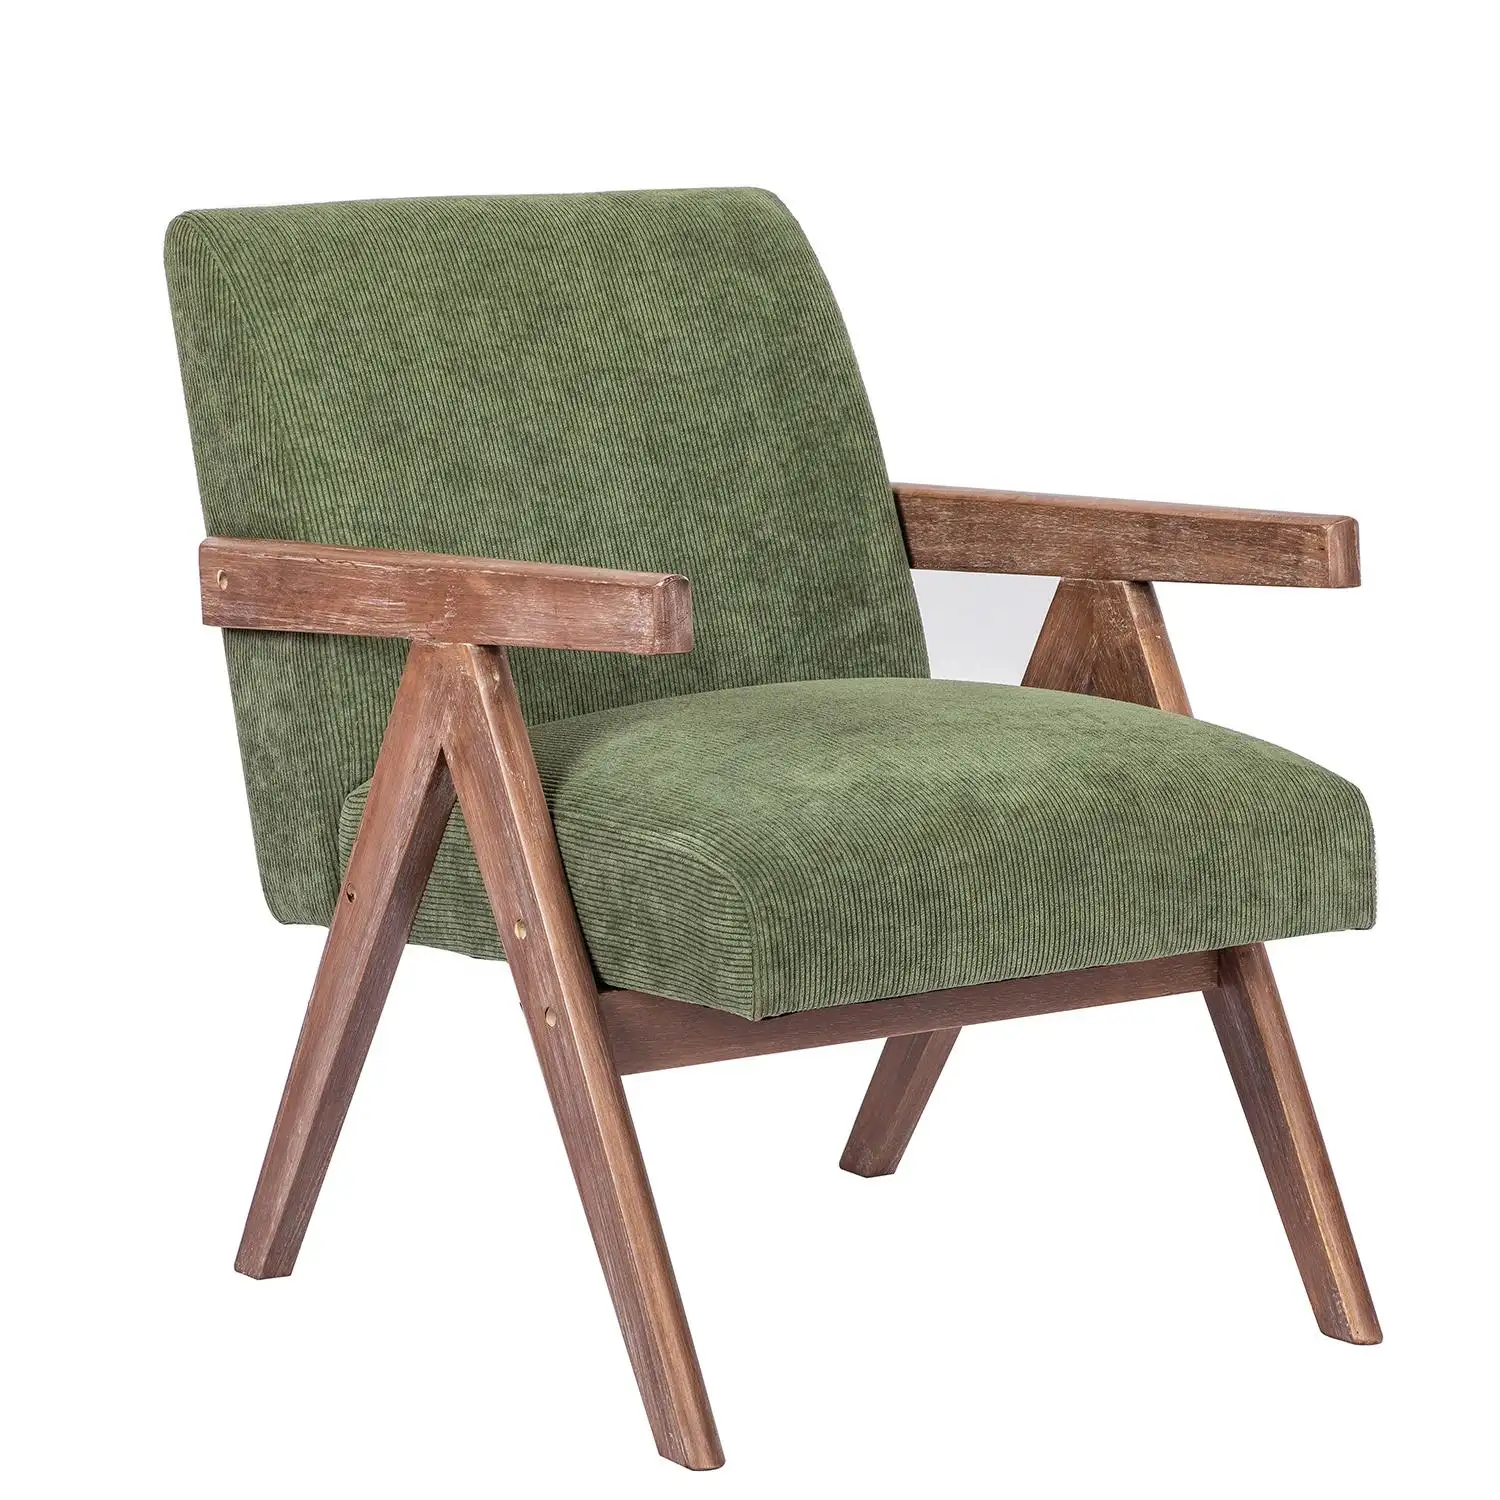 Wuye Retro nórdico tela verde madera maciza sala de estar sillón Silla de ocio